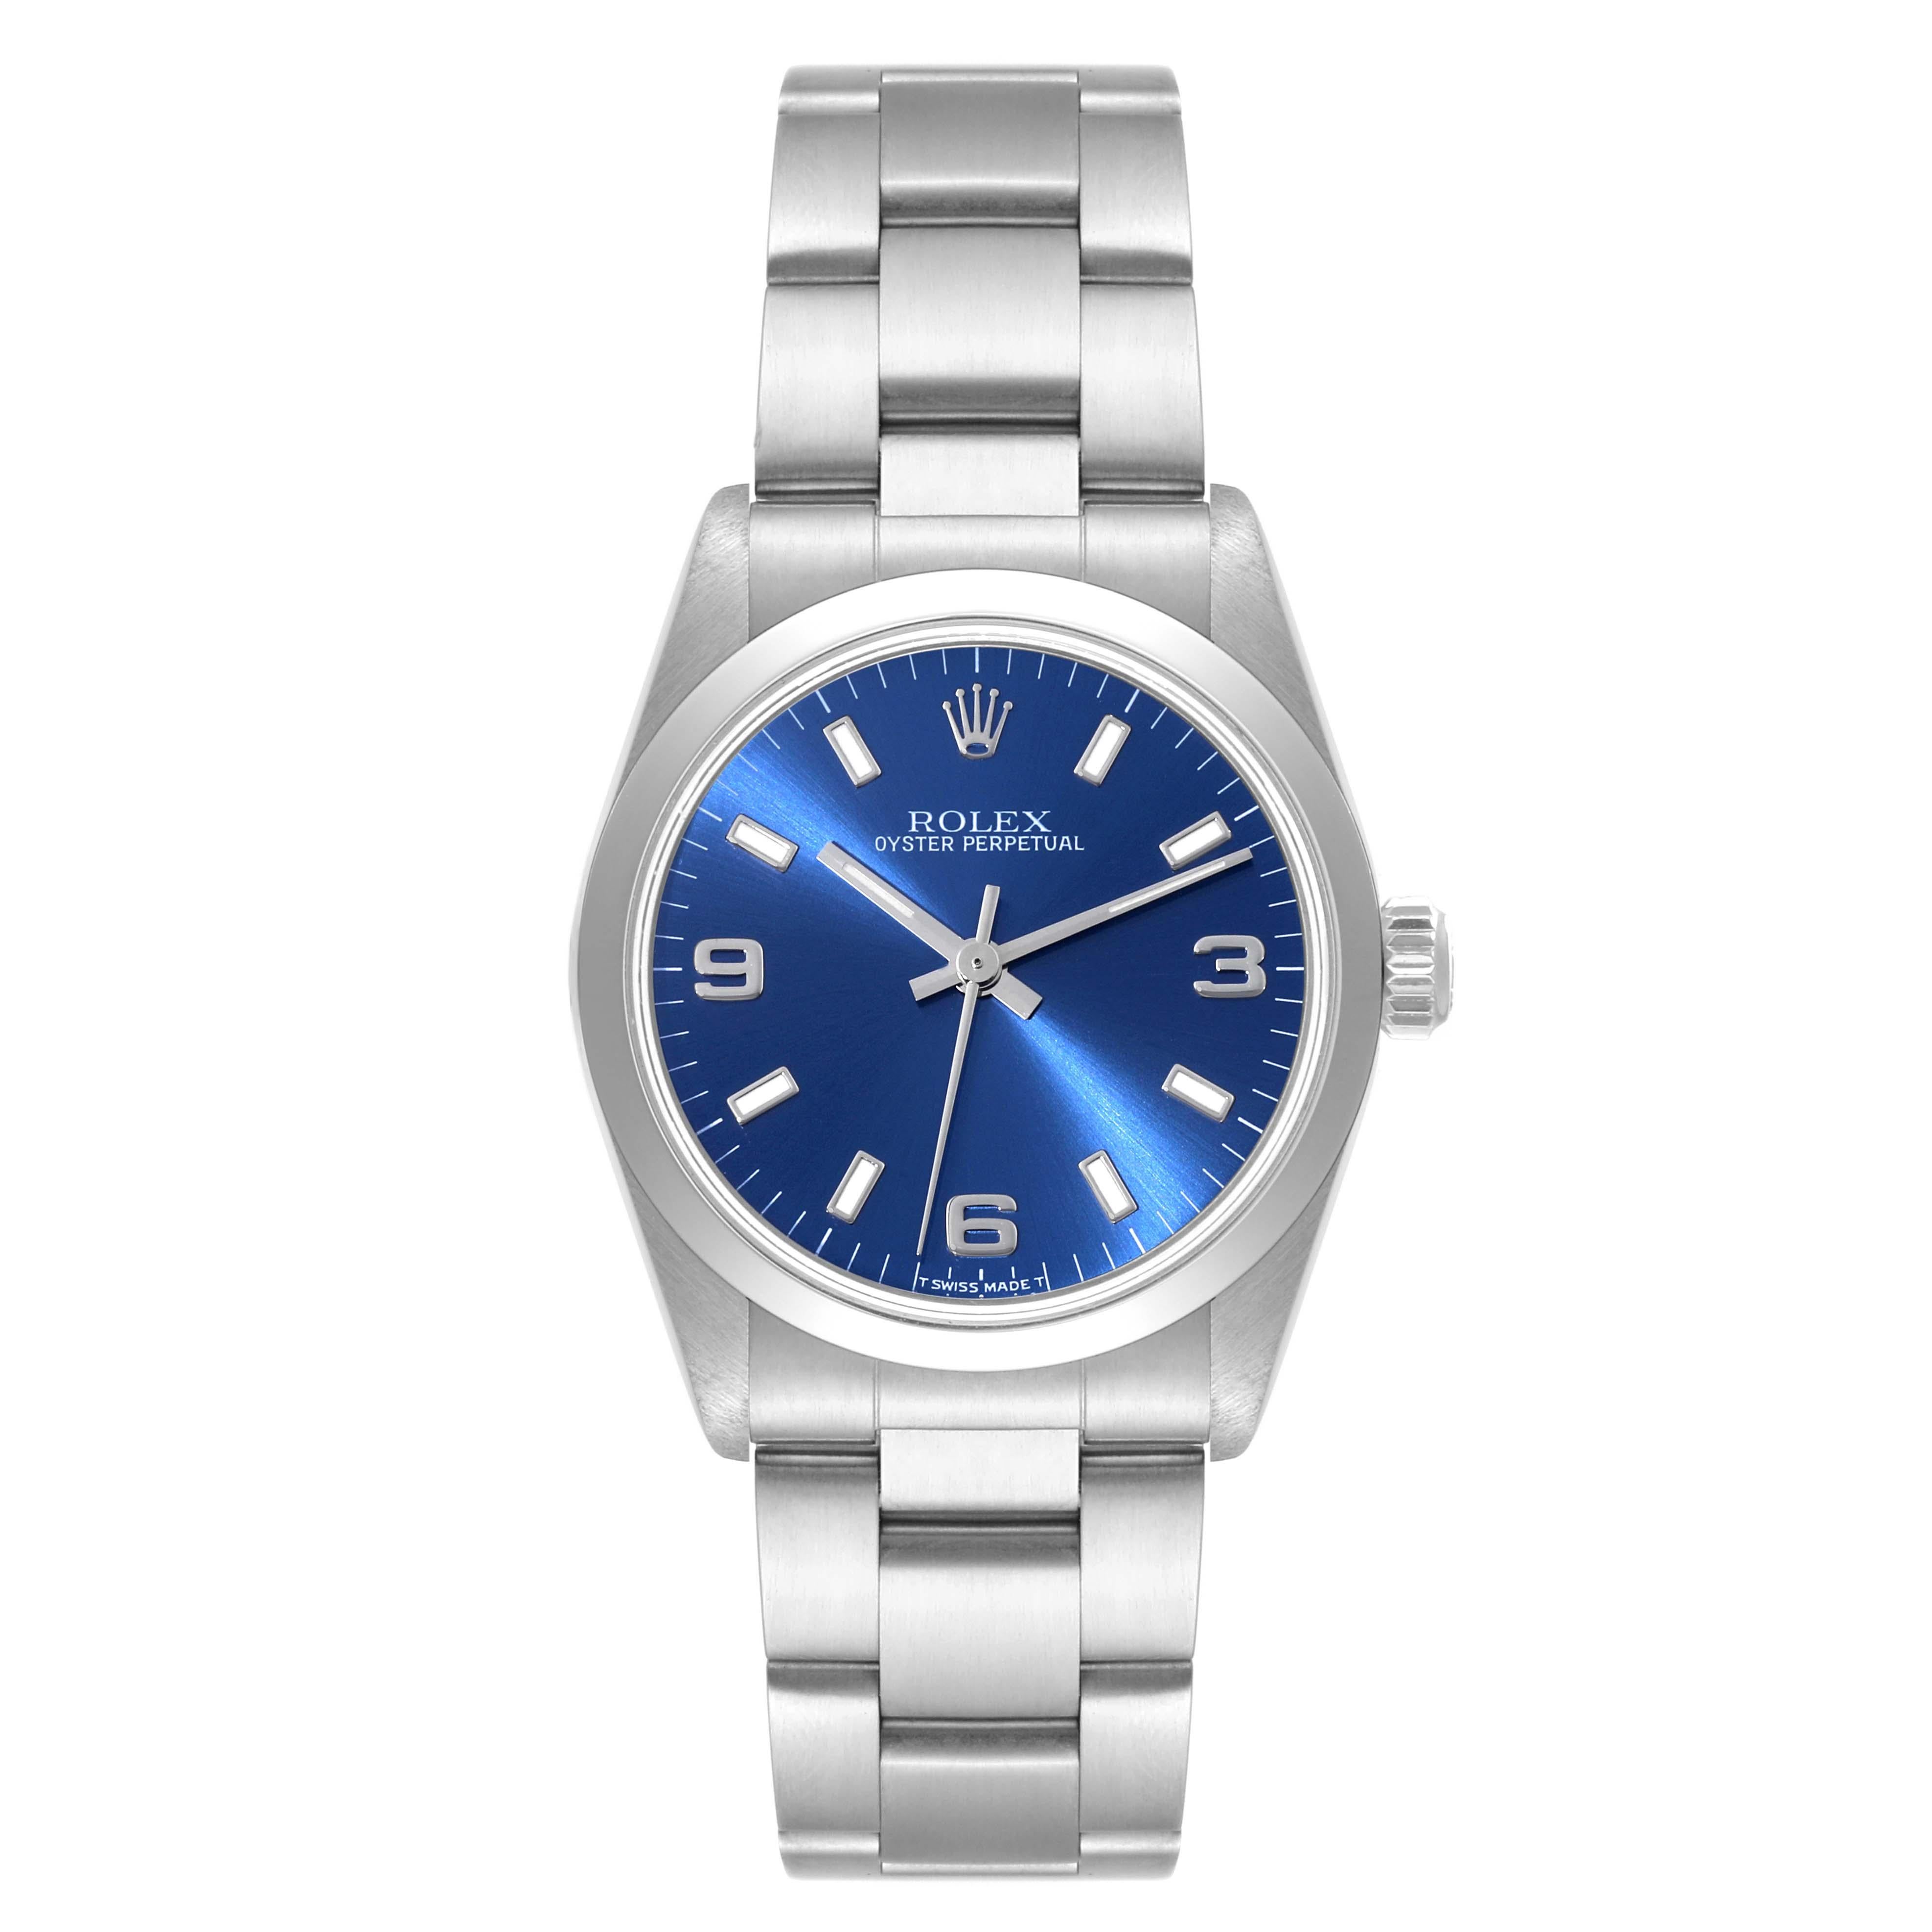 Rolex Midsize 31mm Blue Dial Automatic Steel Ladies Watch 67480. Mouvement automatique à remontage automatique. Boîtier oyster en acier inoxydable de 31.0 mm de diamètre. Logo Rolex sur la couronne. Lunette lisse en acier inoxydable. Verre saphir